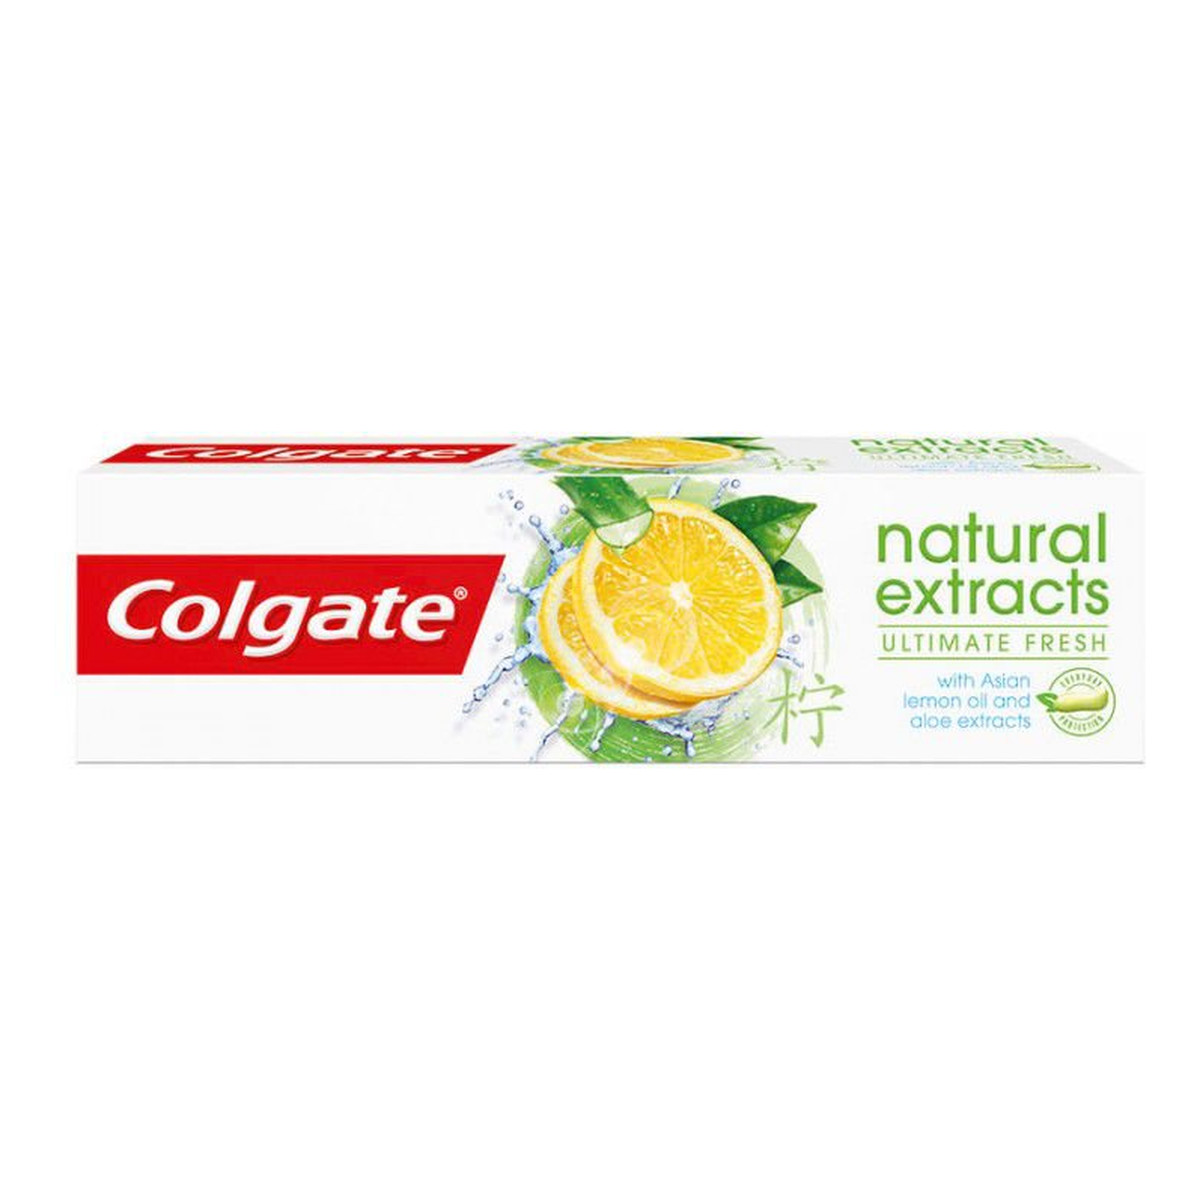 Colgate Natural Extracts Ultimate Fresh pasta do zębów odświeżająca 75ml